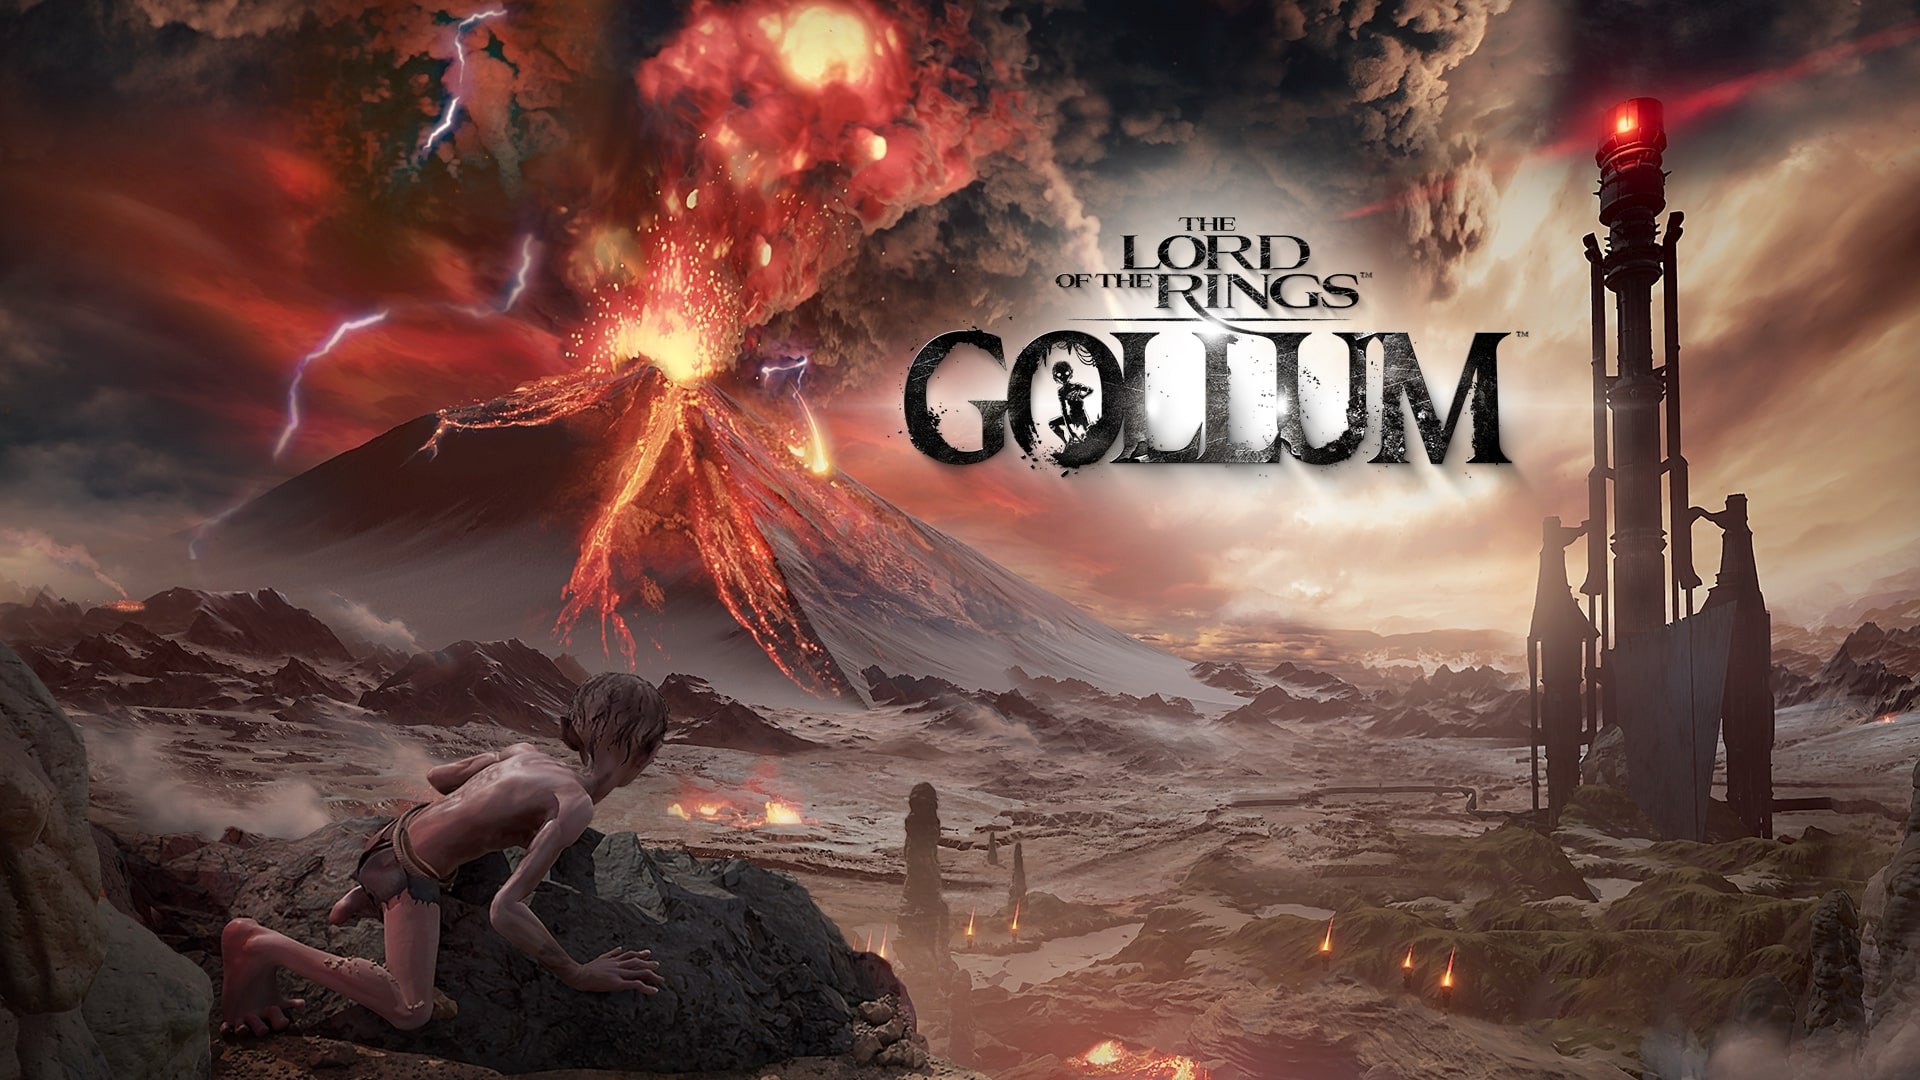 Lord of the Rings Gollum 25 Mayısta çıkış yapacak